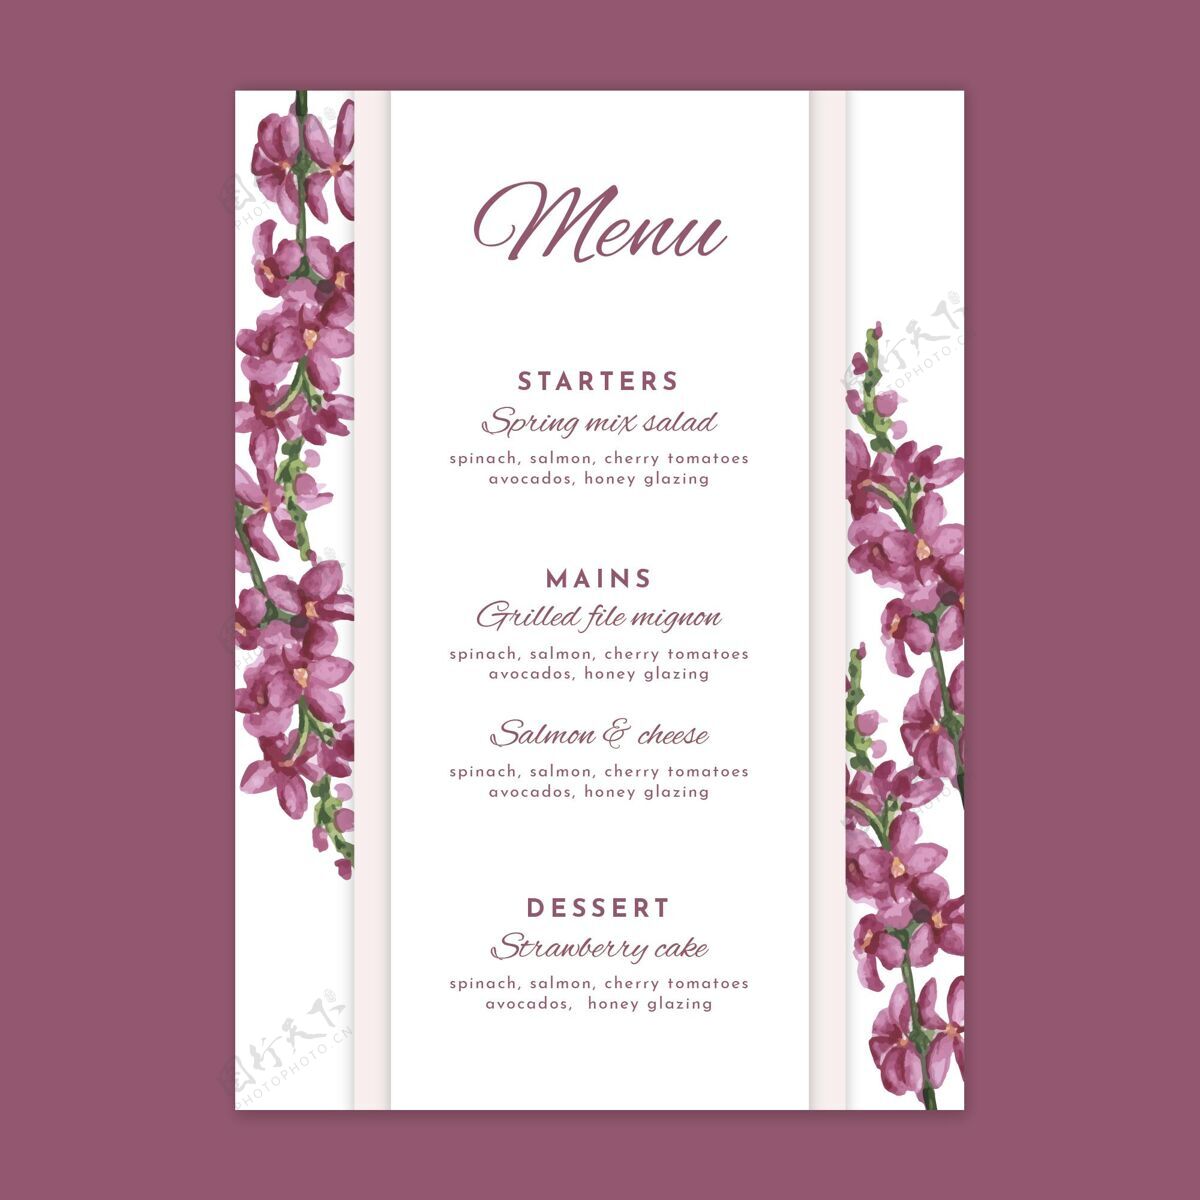 菜单花卉设计婚礼菜单模板菜单模板爱特别